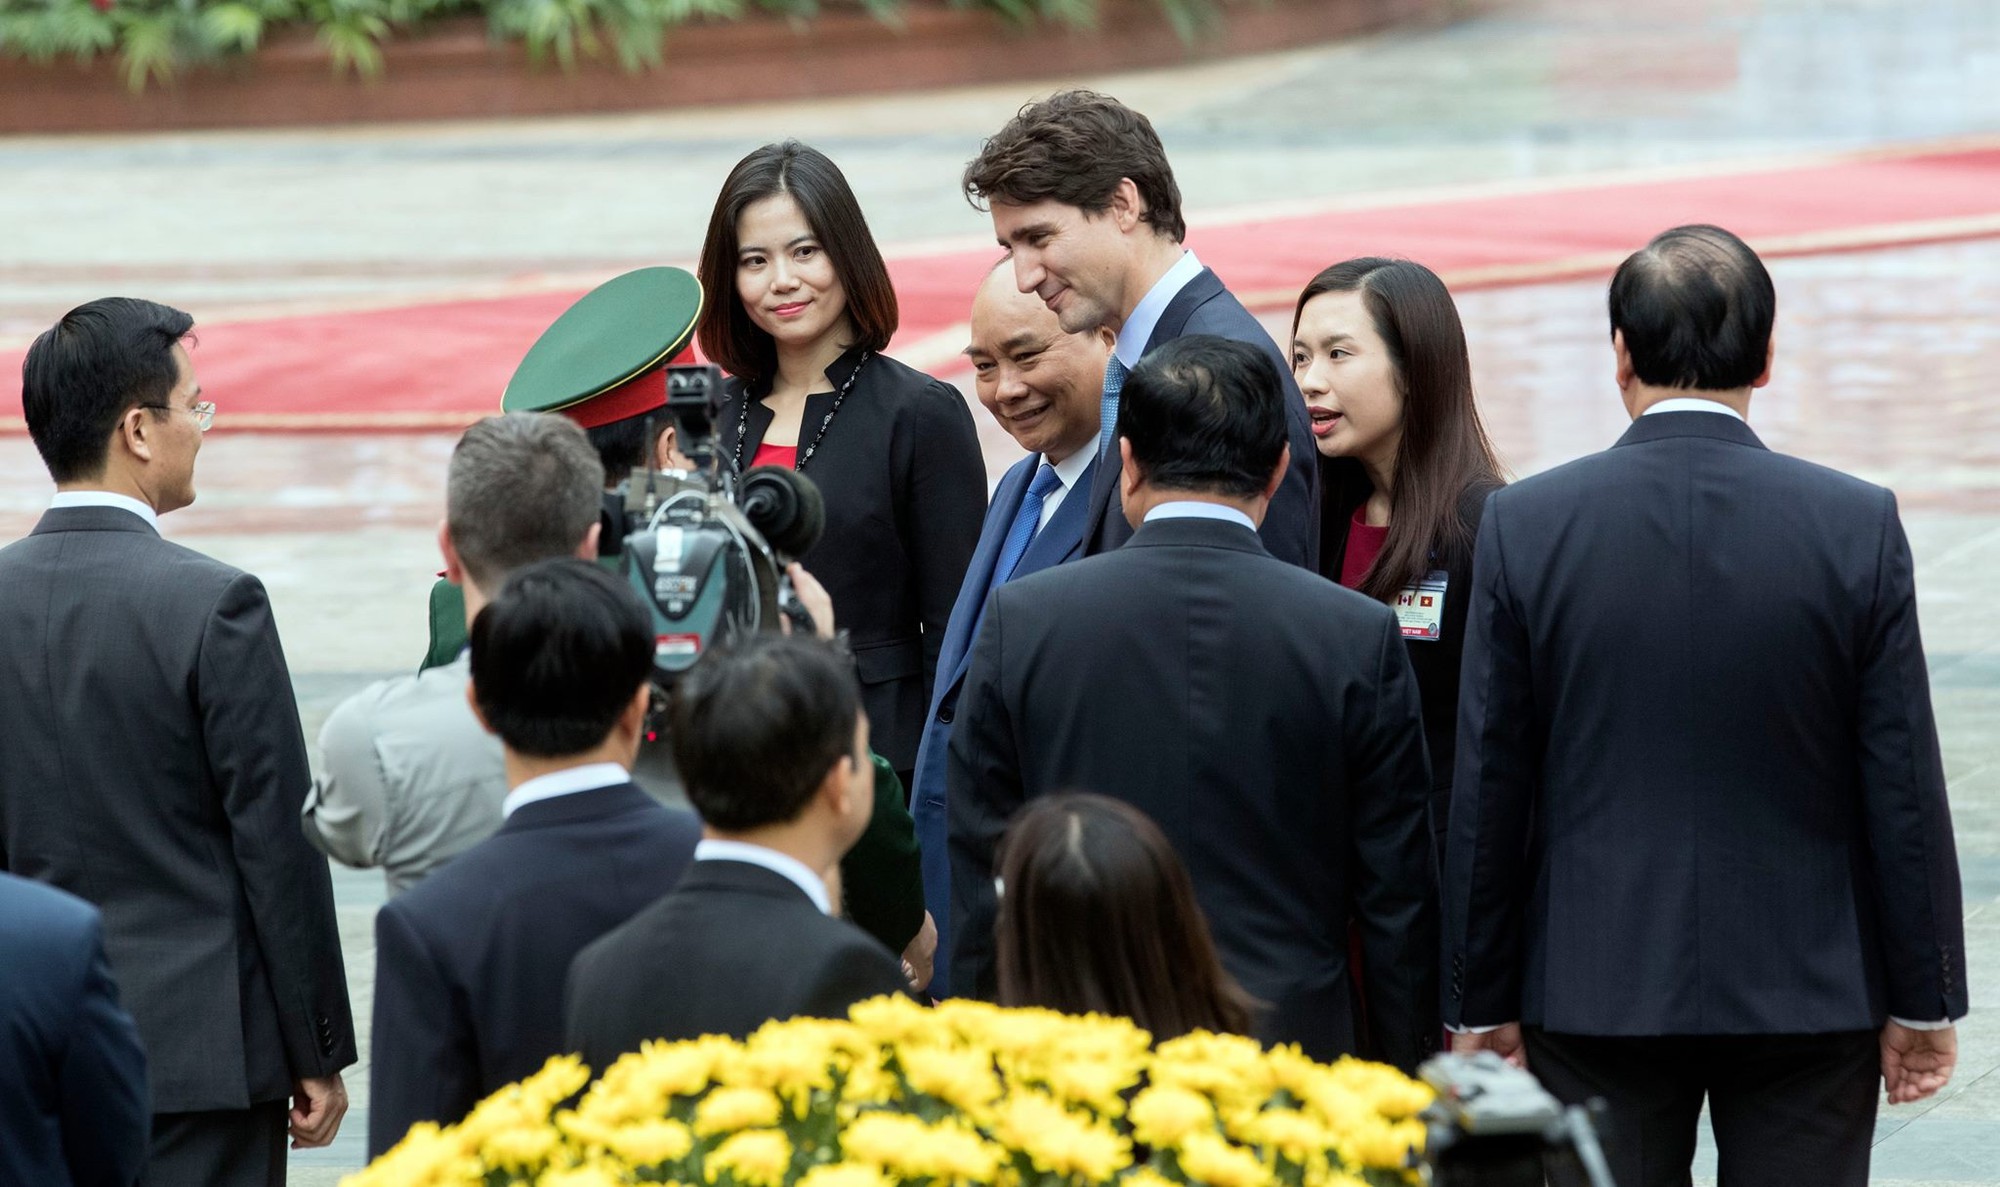 PM Trudeau greets Vietnamese officials. Photo: Tuoi Tre